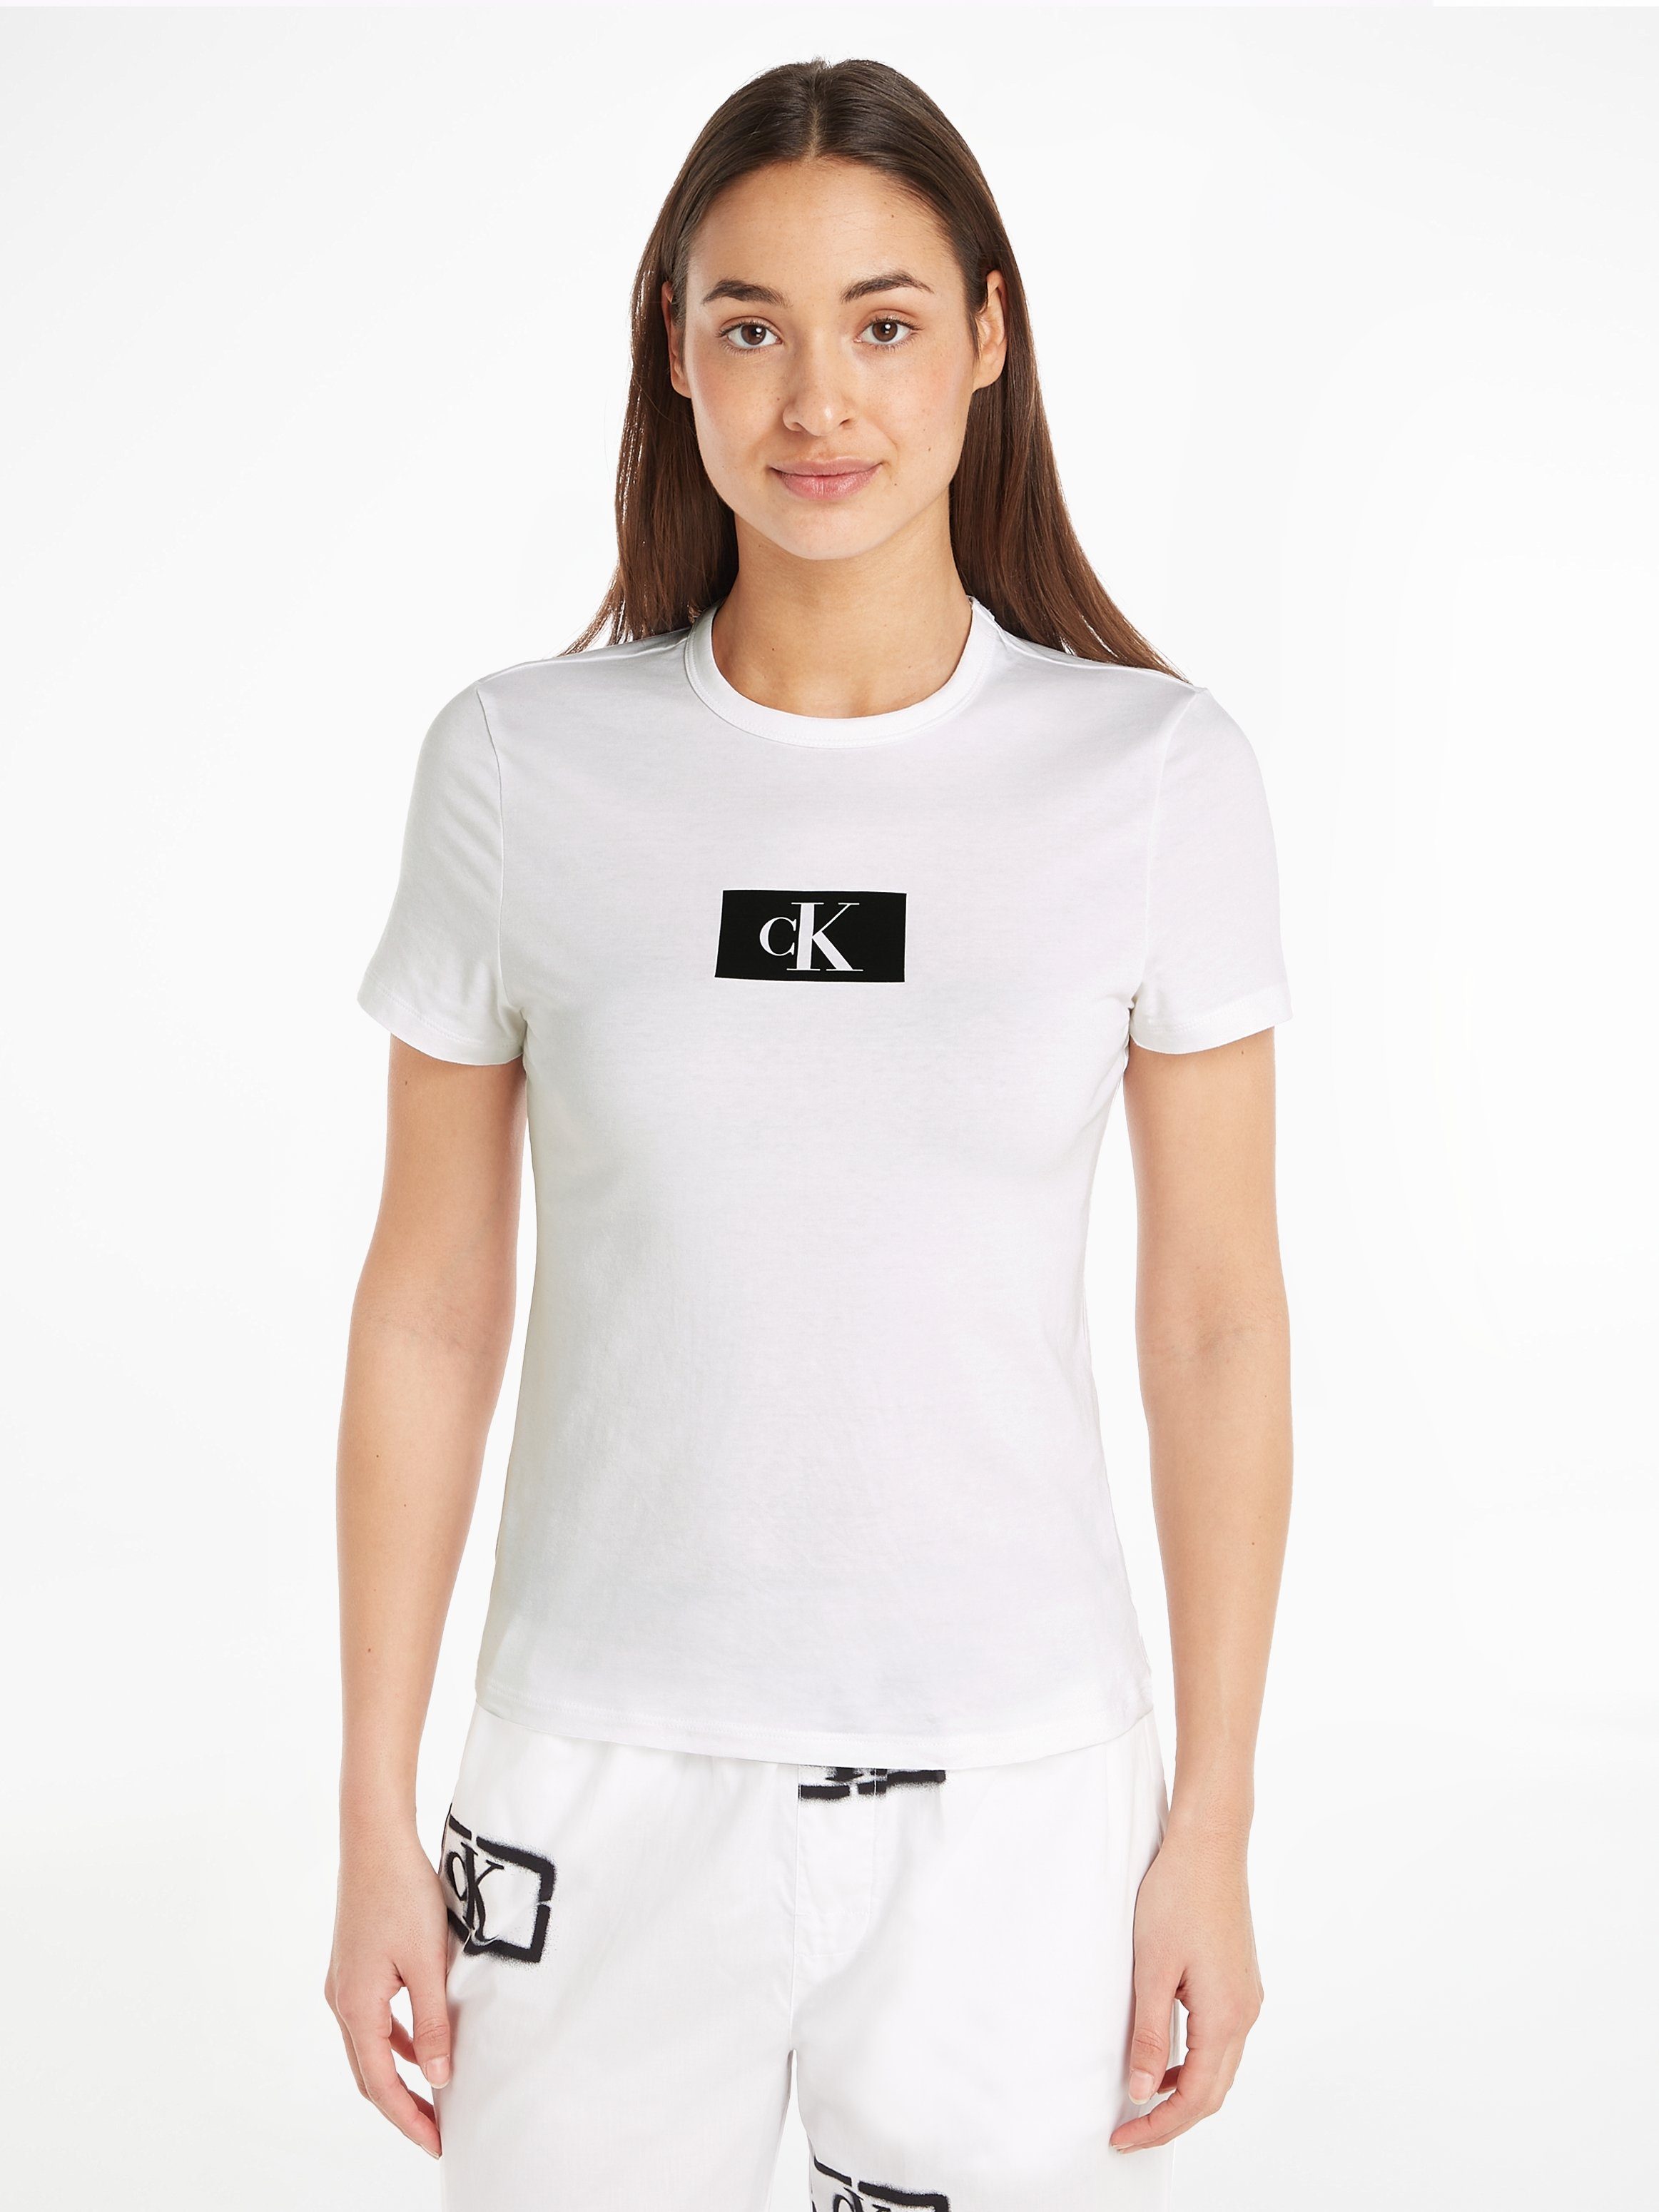 Kurzarmshirt CREW Underwear S/S WHITE Klein Calvin NECK